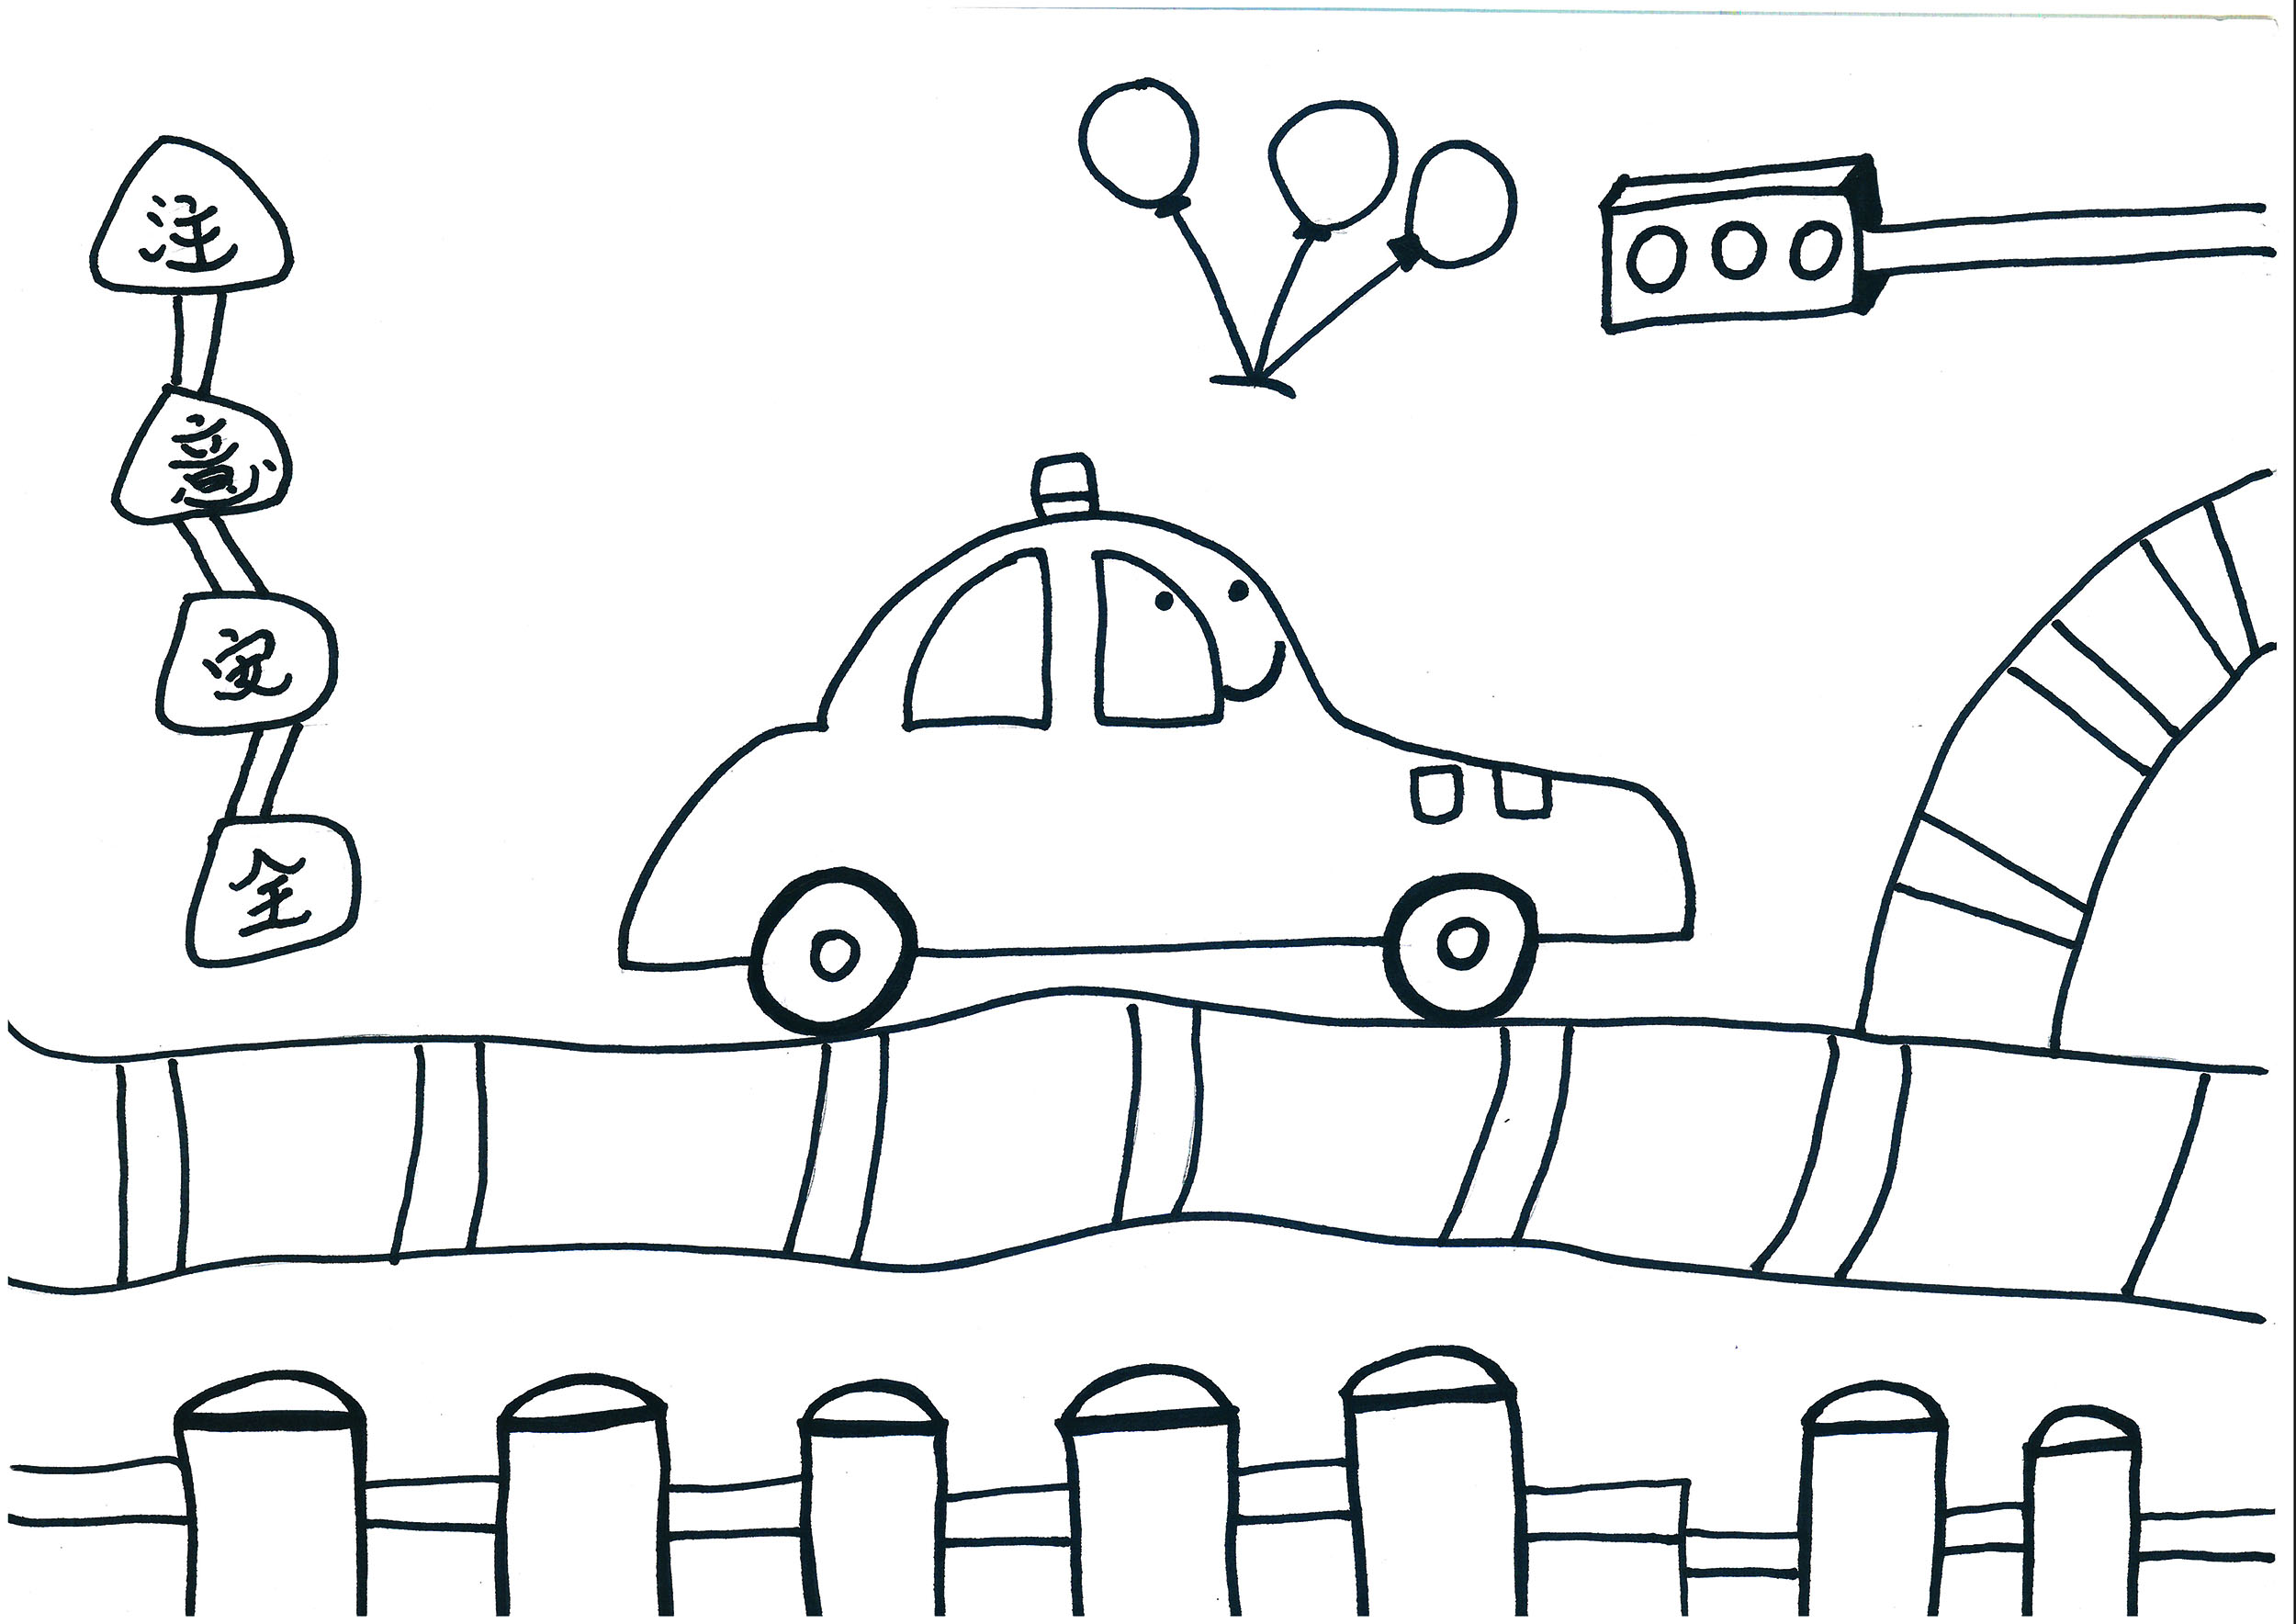 6岁可打印美术涂色画大图片 简单漂亮小汽车的故事主题教程大全